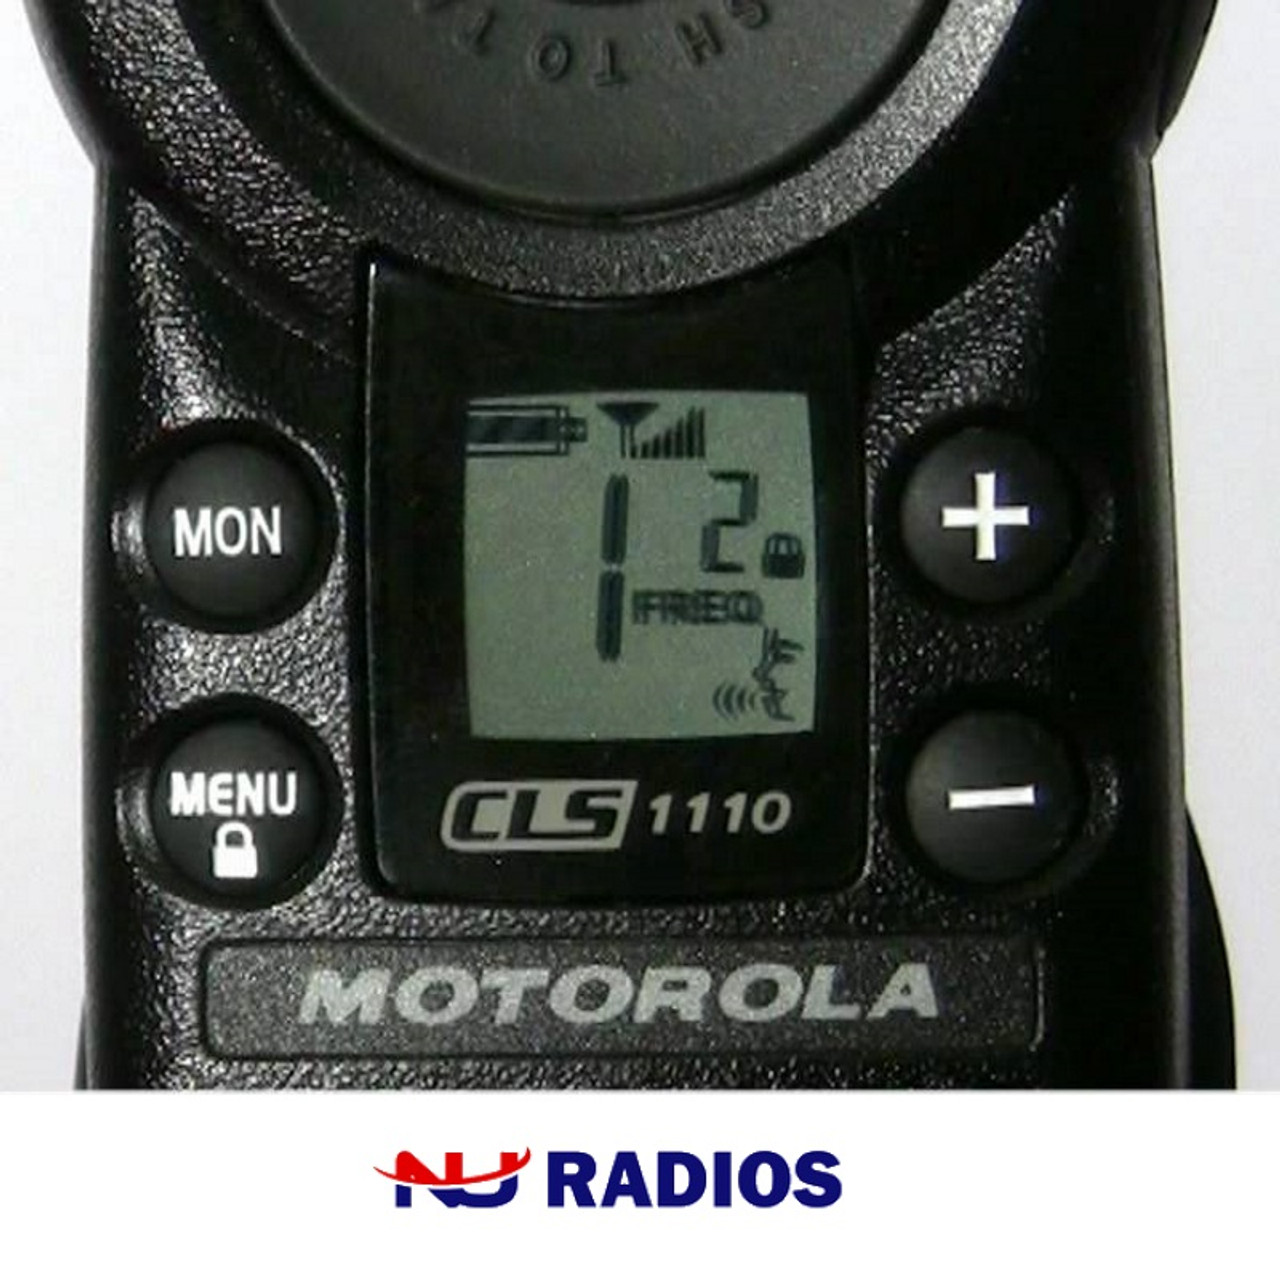 Pack of Motorola CLS1110 Two Way Radio Walkie Talkies - 1